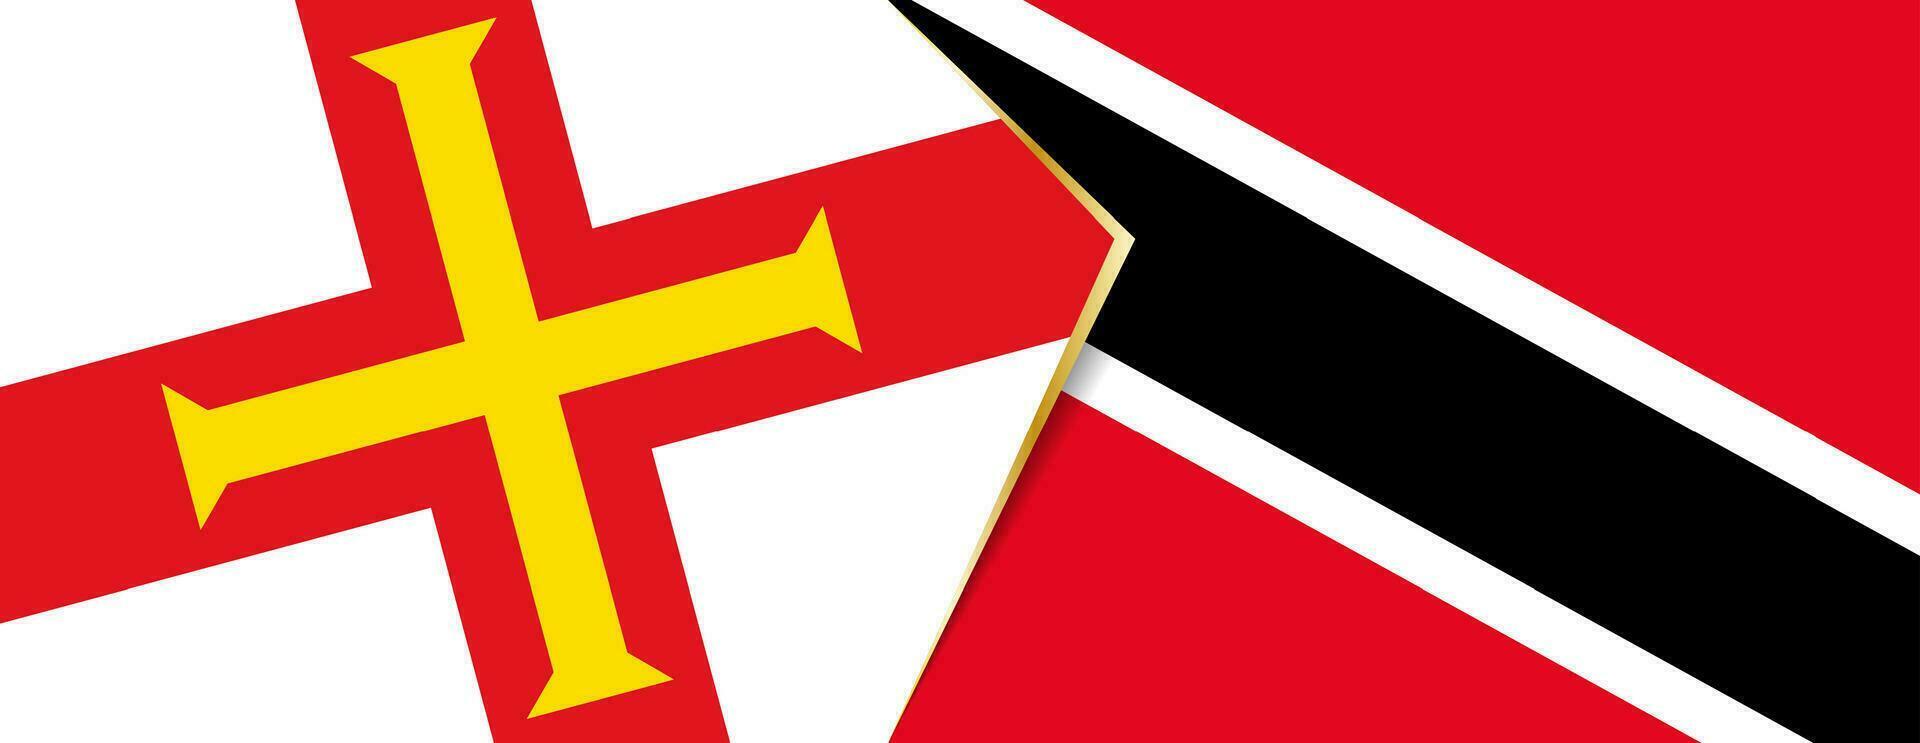 guernsey och trinidad och tobago flaggor, två vektor flaggor.